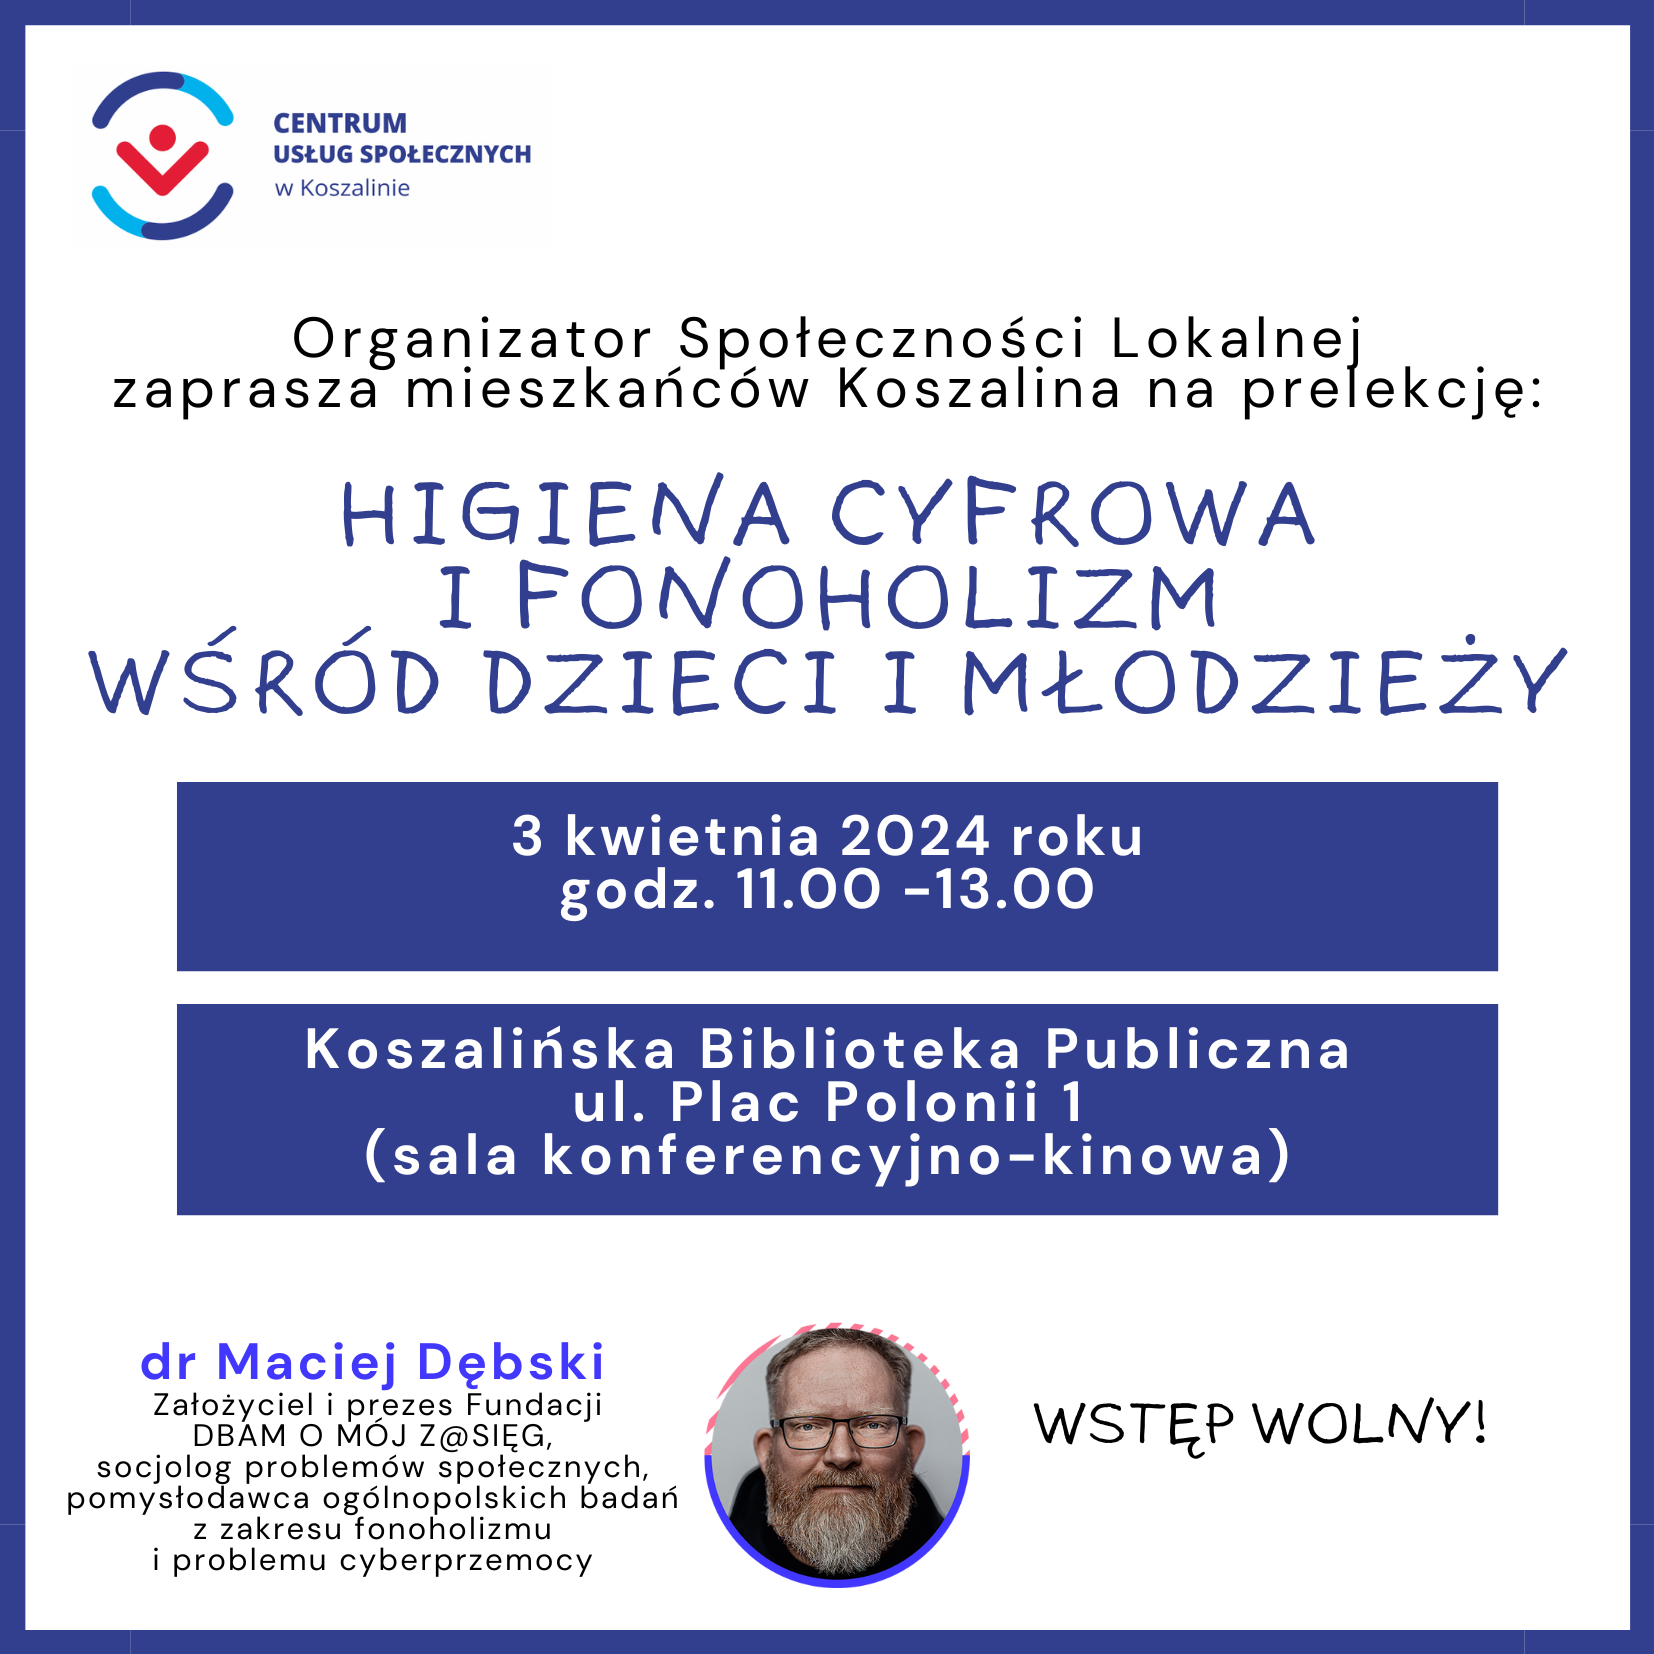 Plakat przedstawia zdjęcie osoby i zaproszenie na prelekcję Higiena cyfrowa i fonoholizm wśród dzieci i młodzieży w dniu 3 kwietnia 2024 roku, godzina 11.00, Biblioteka Wojewódzka w Koszalinie